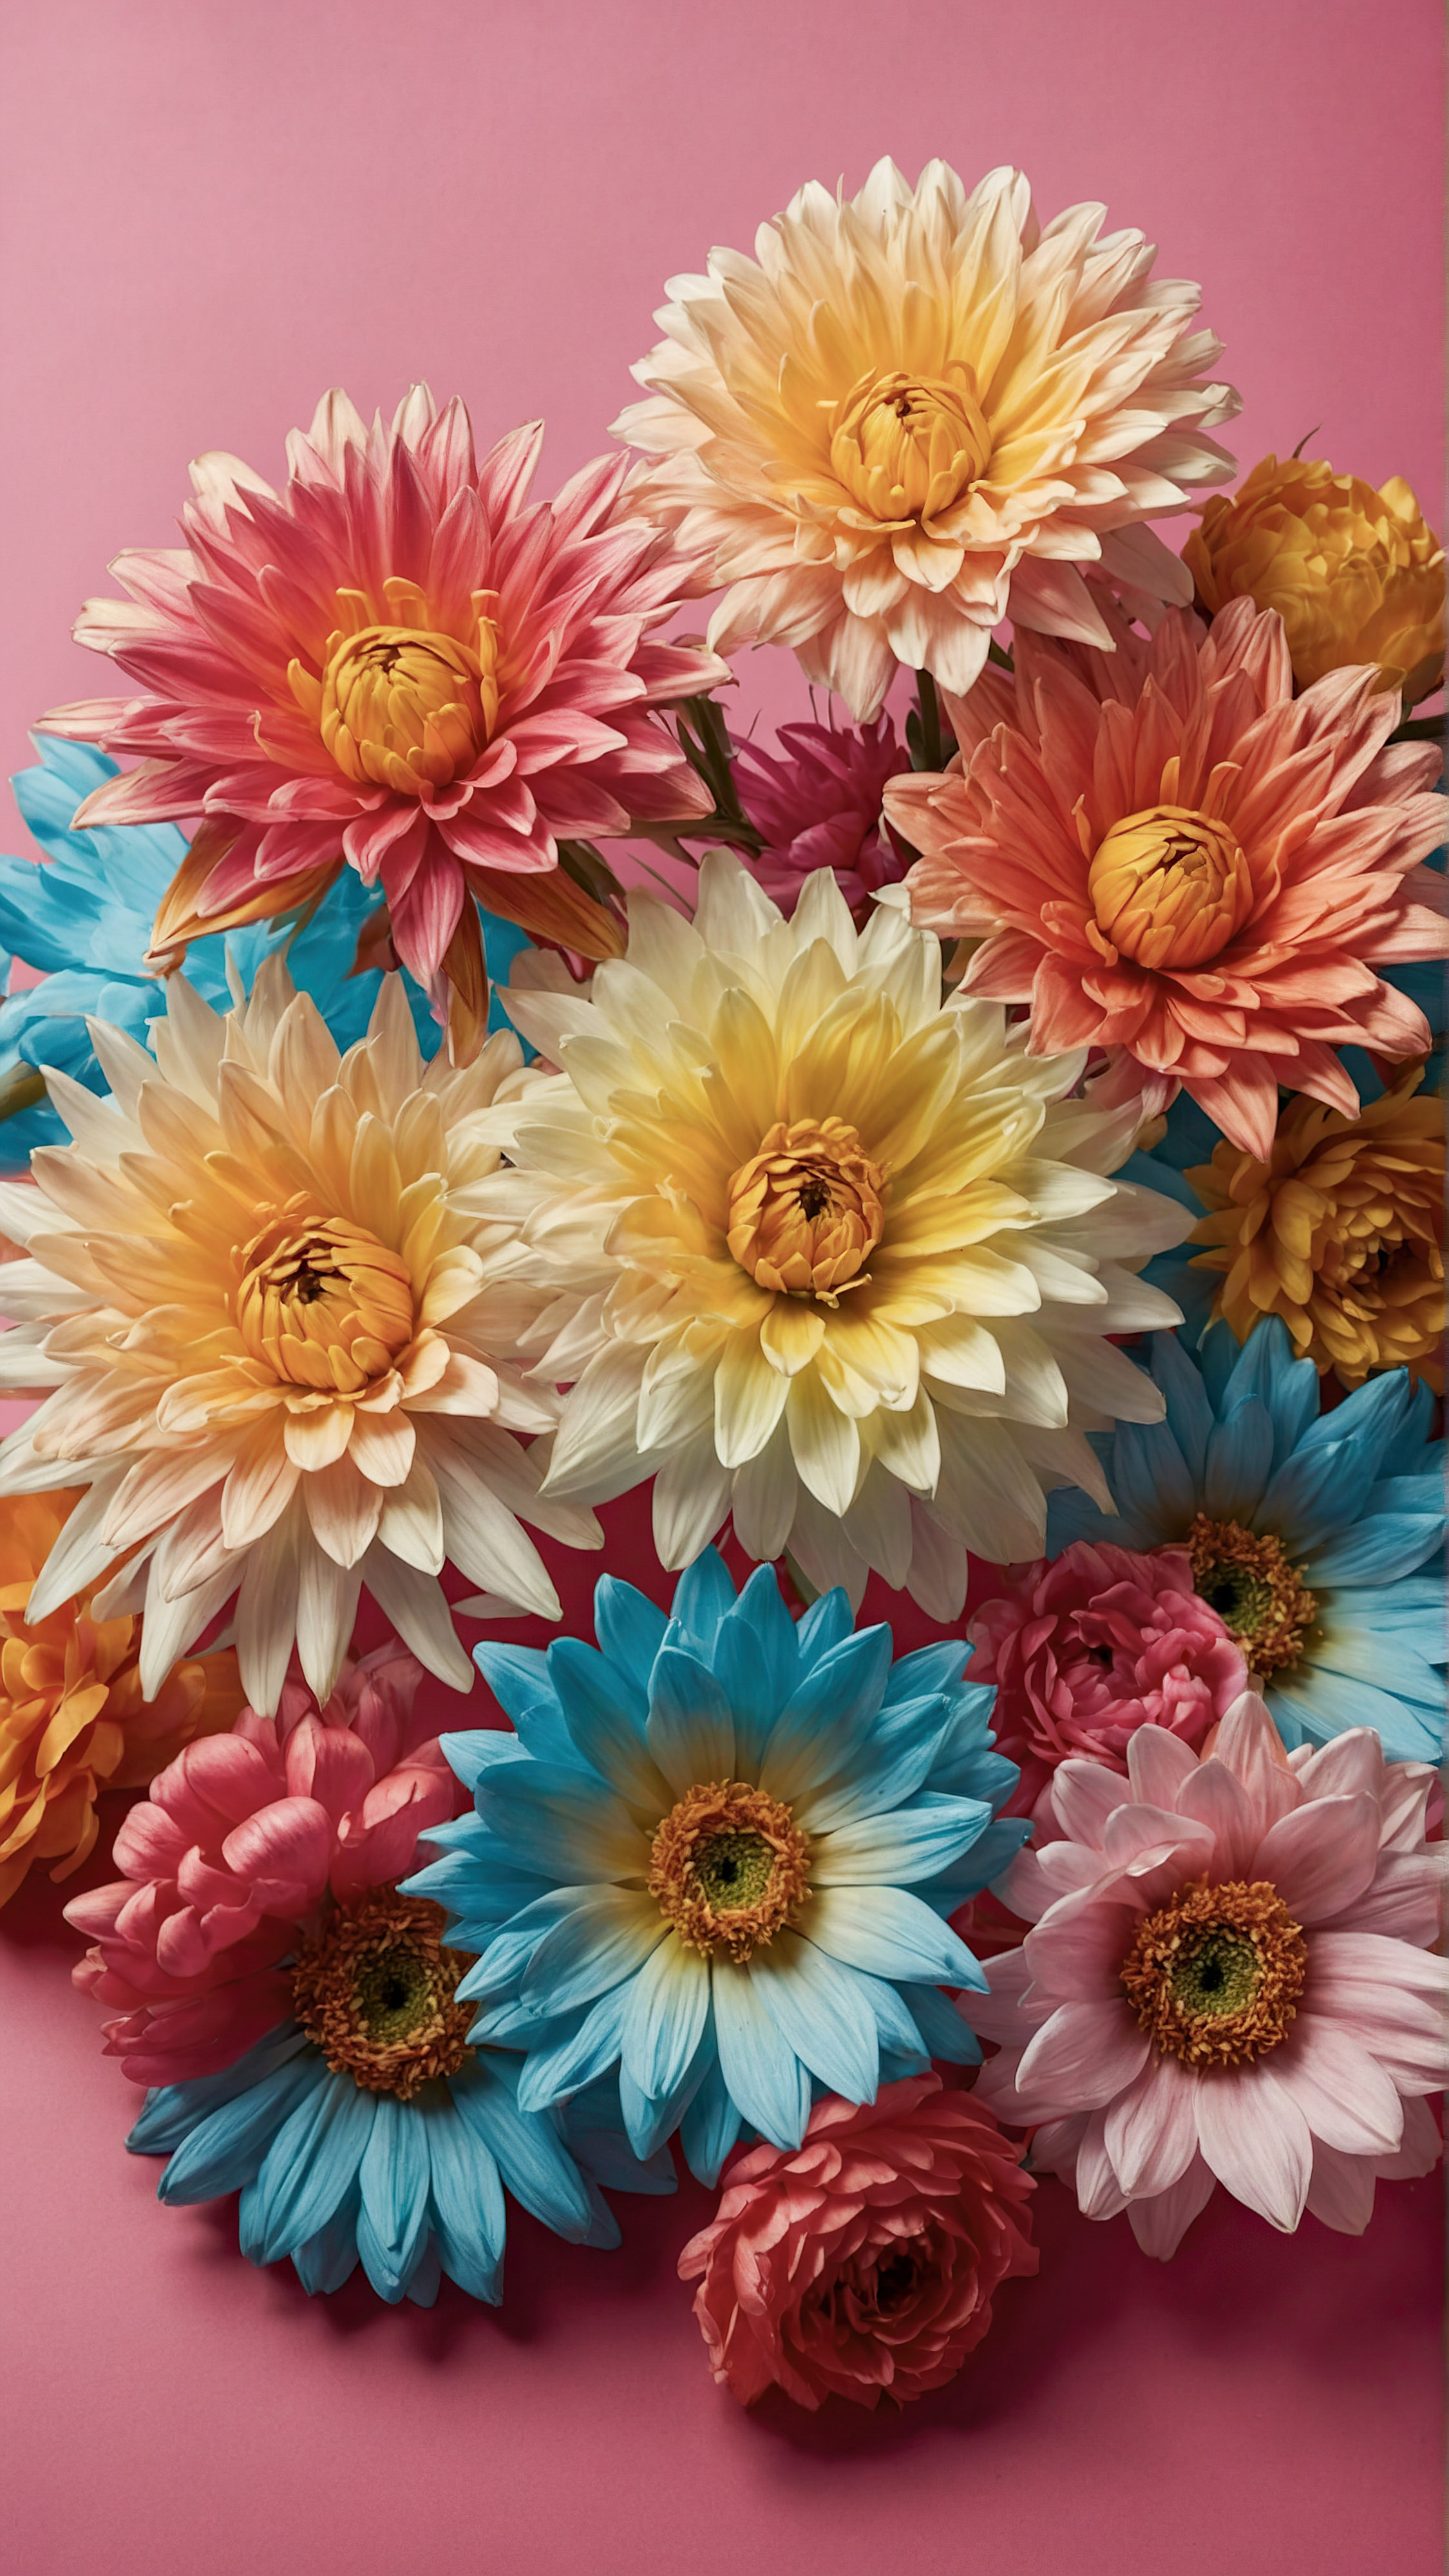 Profitez de la beauté et du style de notre magnifique fond d'écran iPhone, présentant une collection de fleurs artificielles vibrantes avec des pétales détaillés et des centres, sur un fond rose contrastant. 